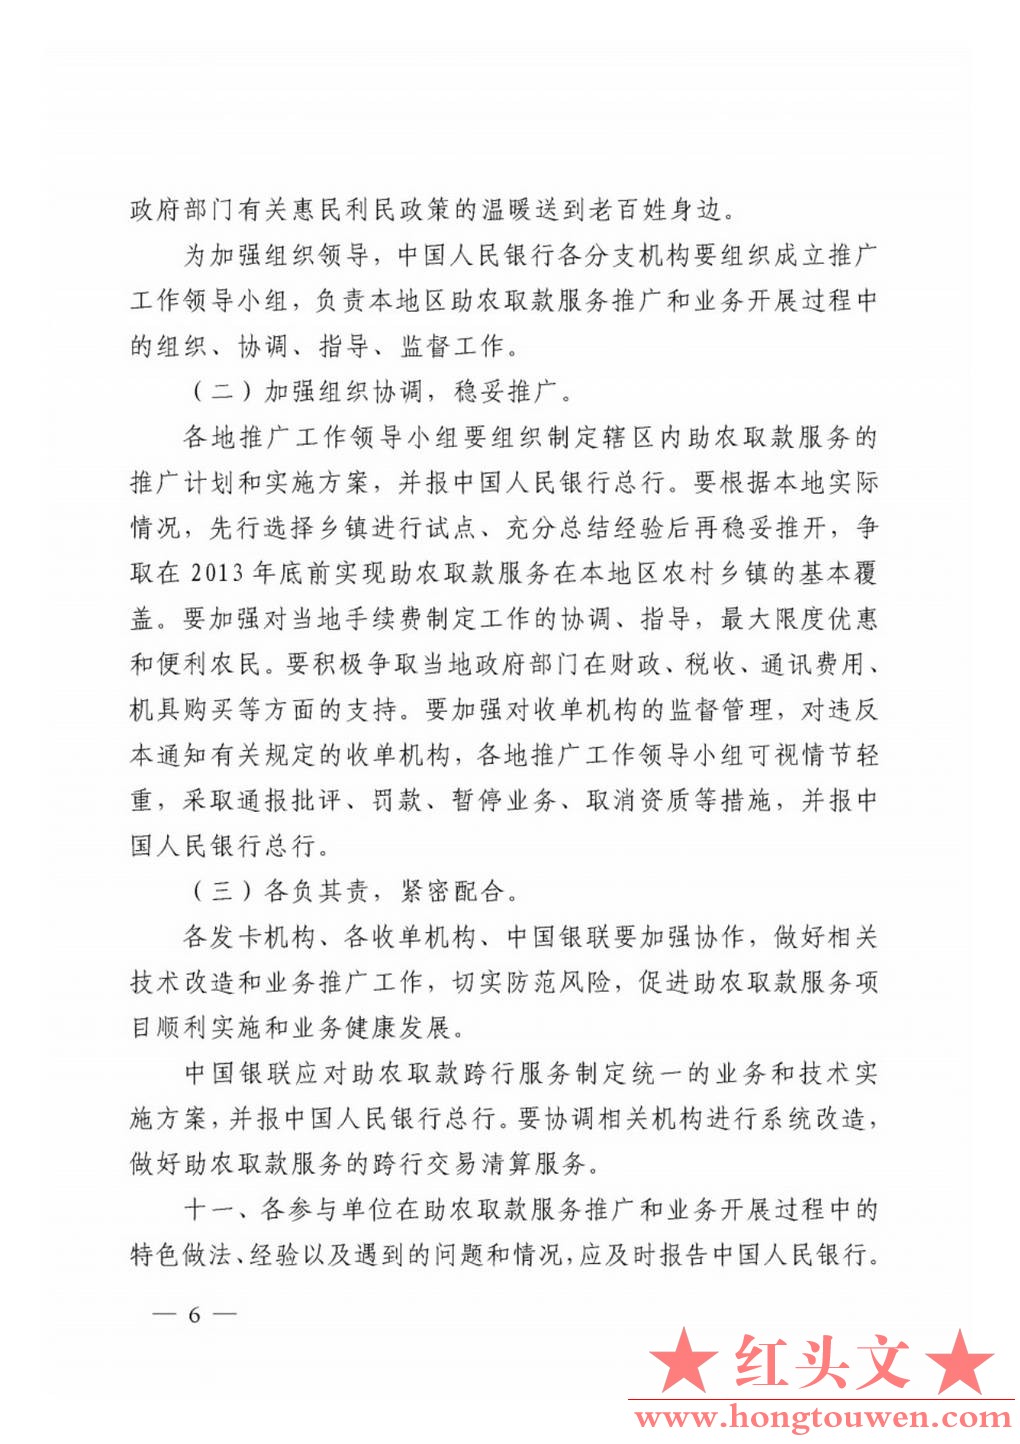 银发[2011]177号-中国人民银行关于推广银行卡助农取款服务的通知_Page6.jpg.jpg